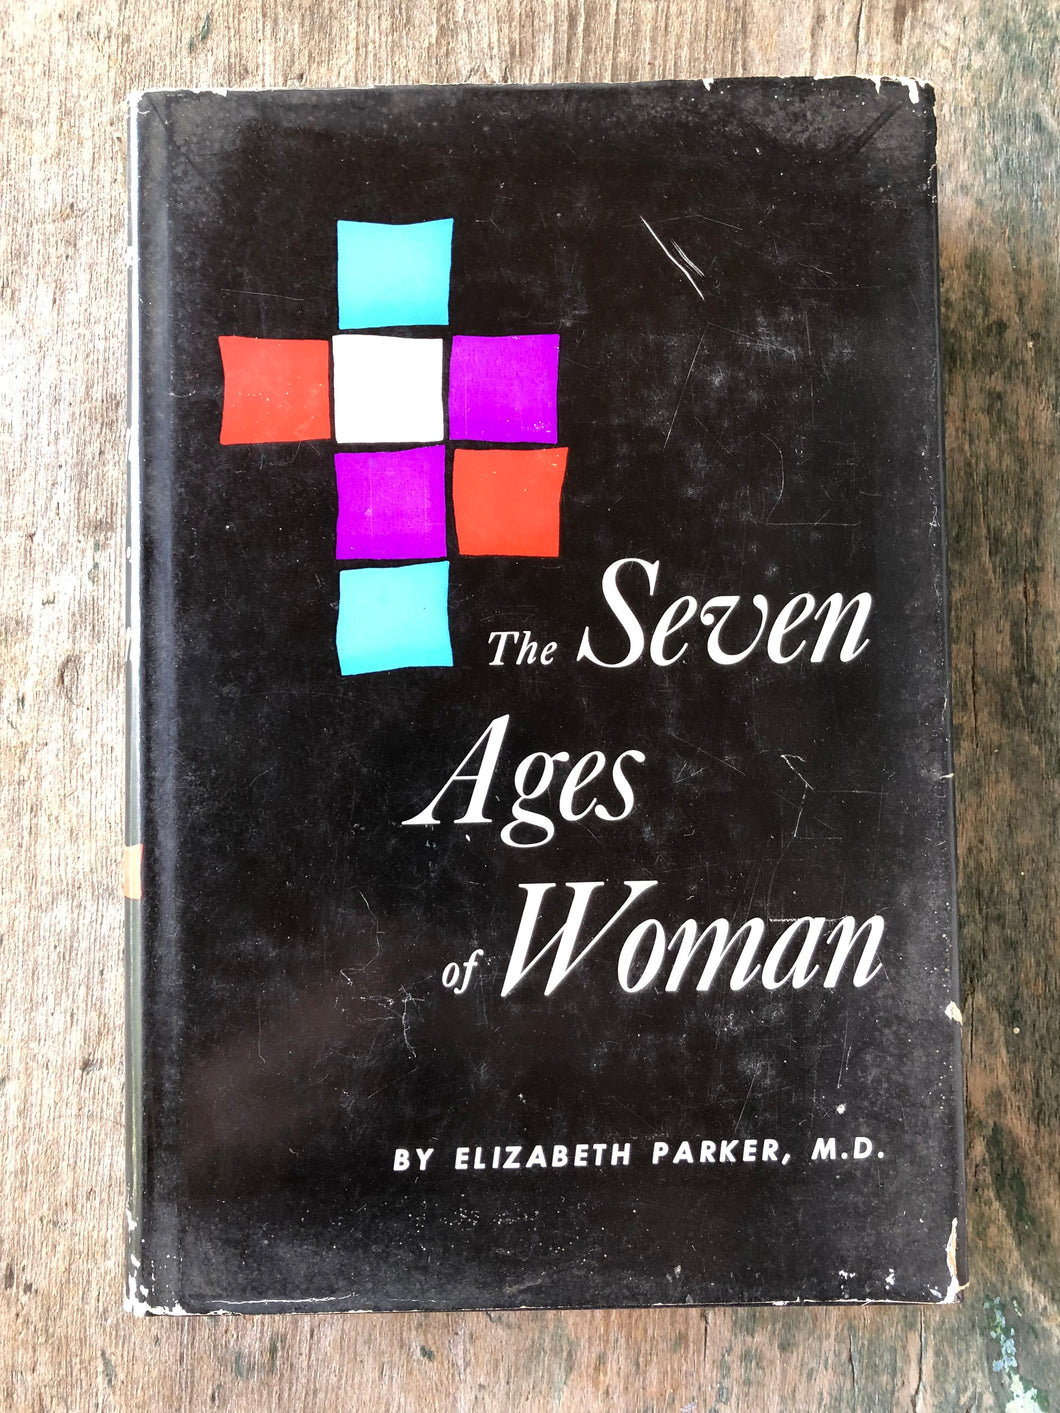 The Seven Ages of Woman by Elizabeth Parker, M. D.